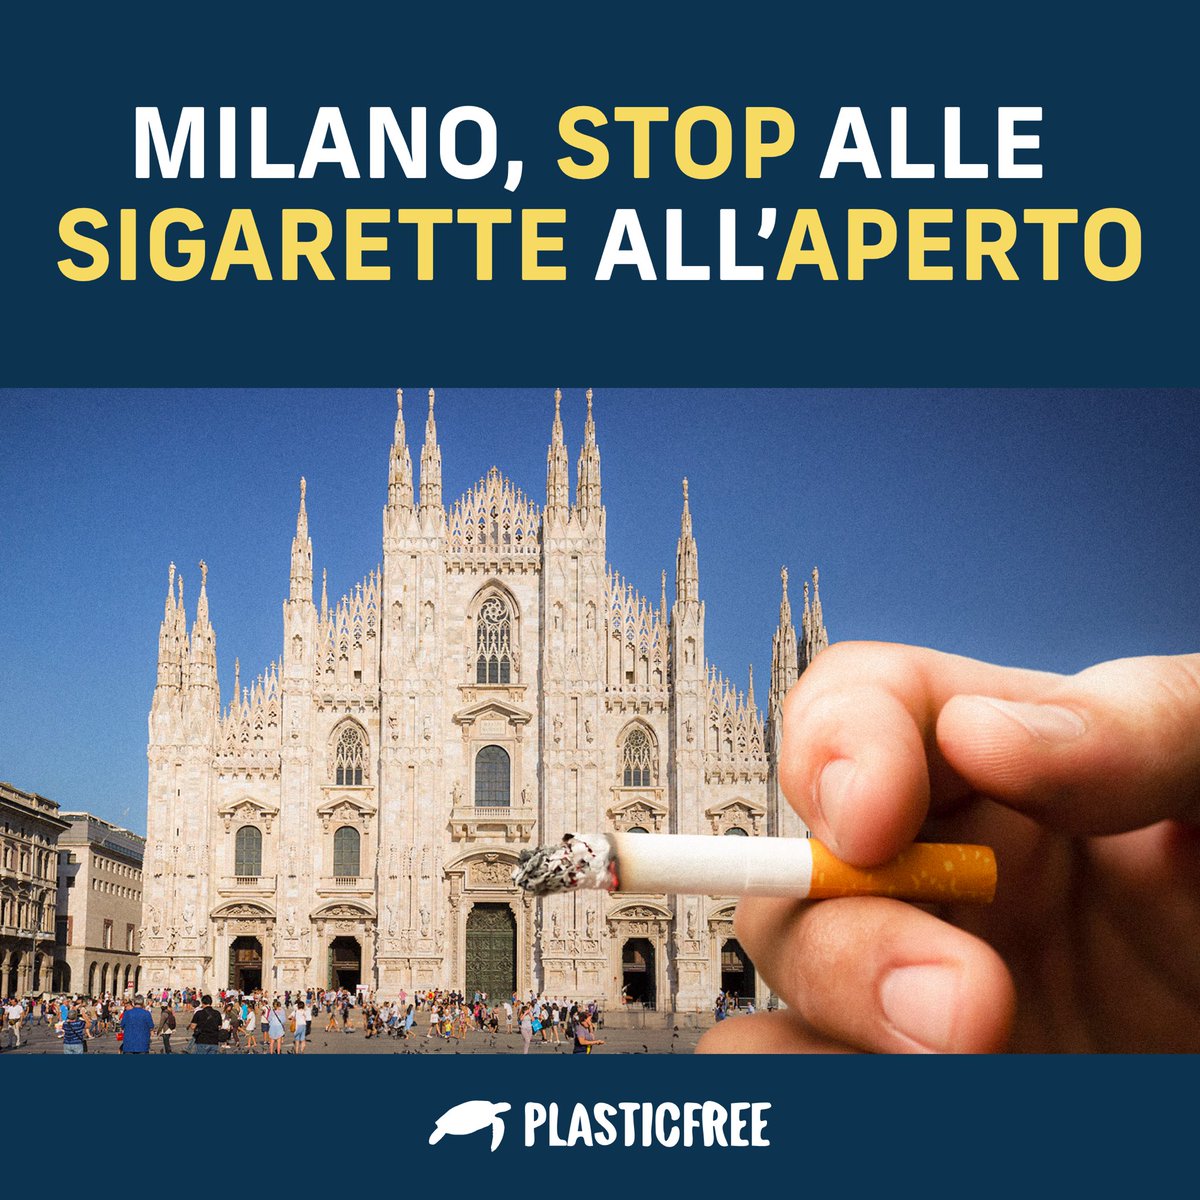 A partire dal 1° gennaio 2025, a #Milano, sarà permesso fumare solo nei luoghi dove è possibile mantenere una distanza di almeno 10m da altre persone.

Oltre alle aree verdi pubbliche e parchi giochi, il divieto si estenderà anche a strade, piazze e marciapiedi.

#fumo #ambiente